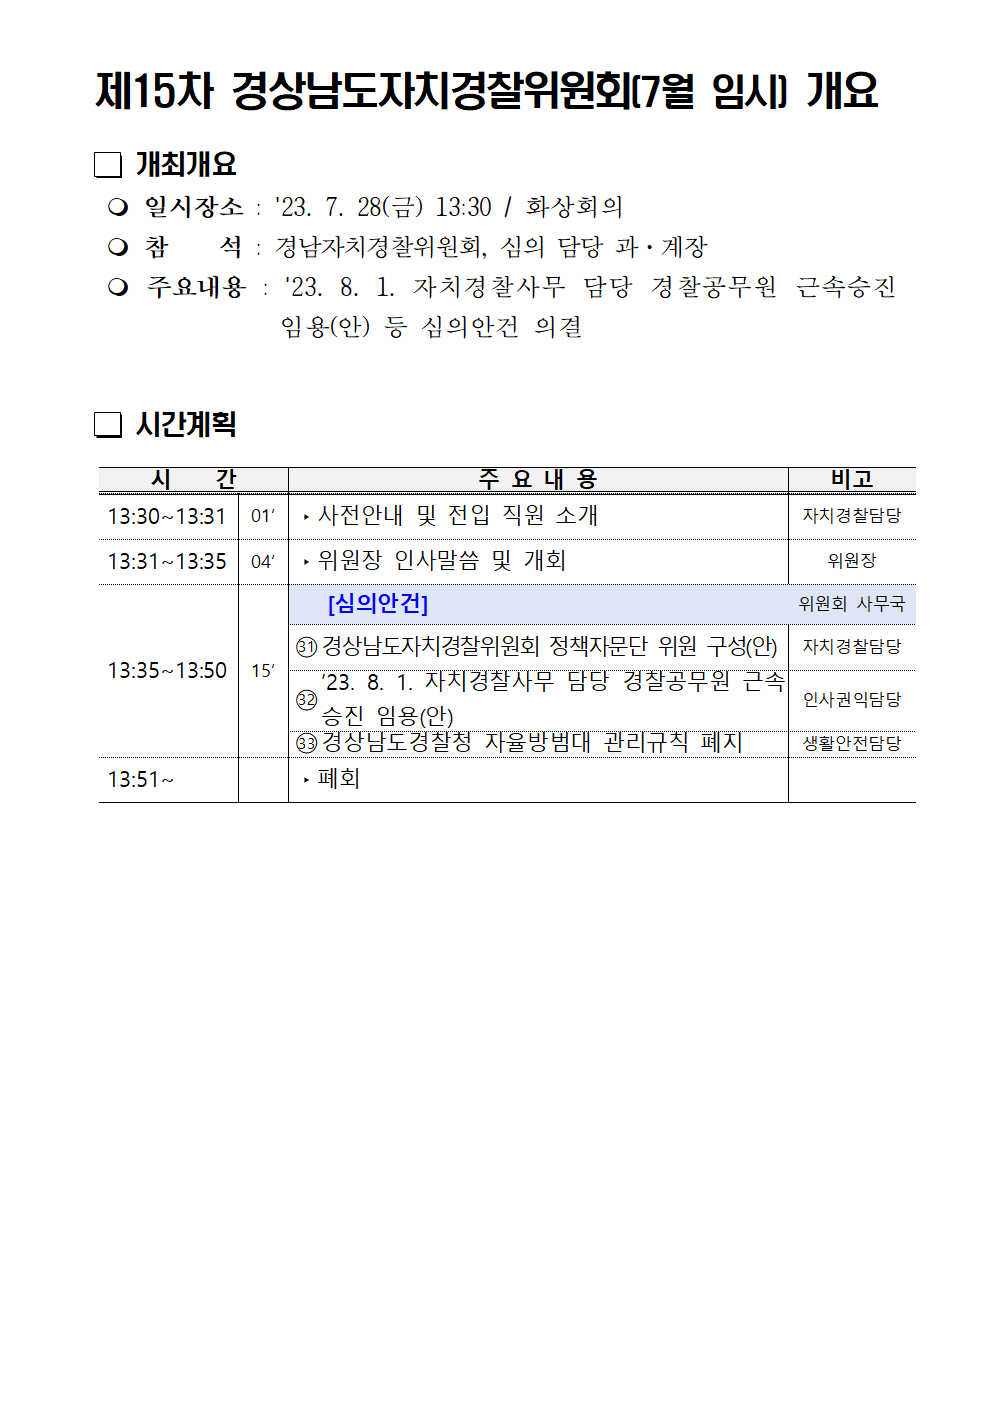 23년 제15차 경상남도자치경찰위원회(7월 임시) 개최 개요(블로그)의 파일 이미지